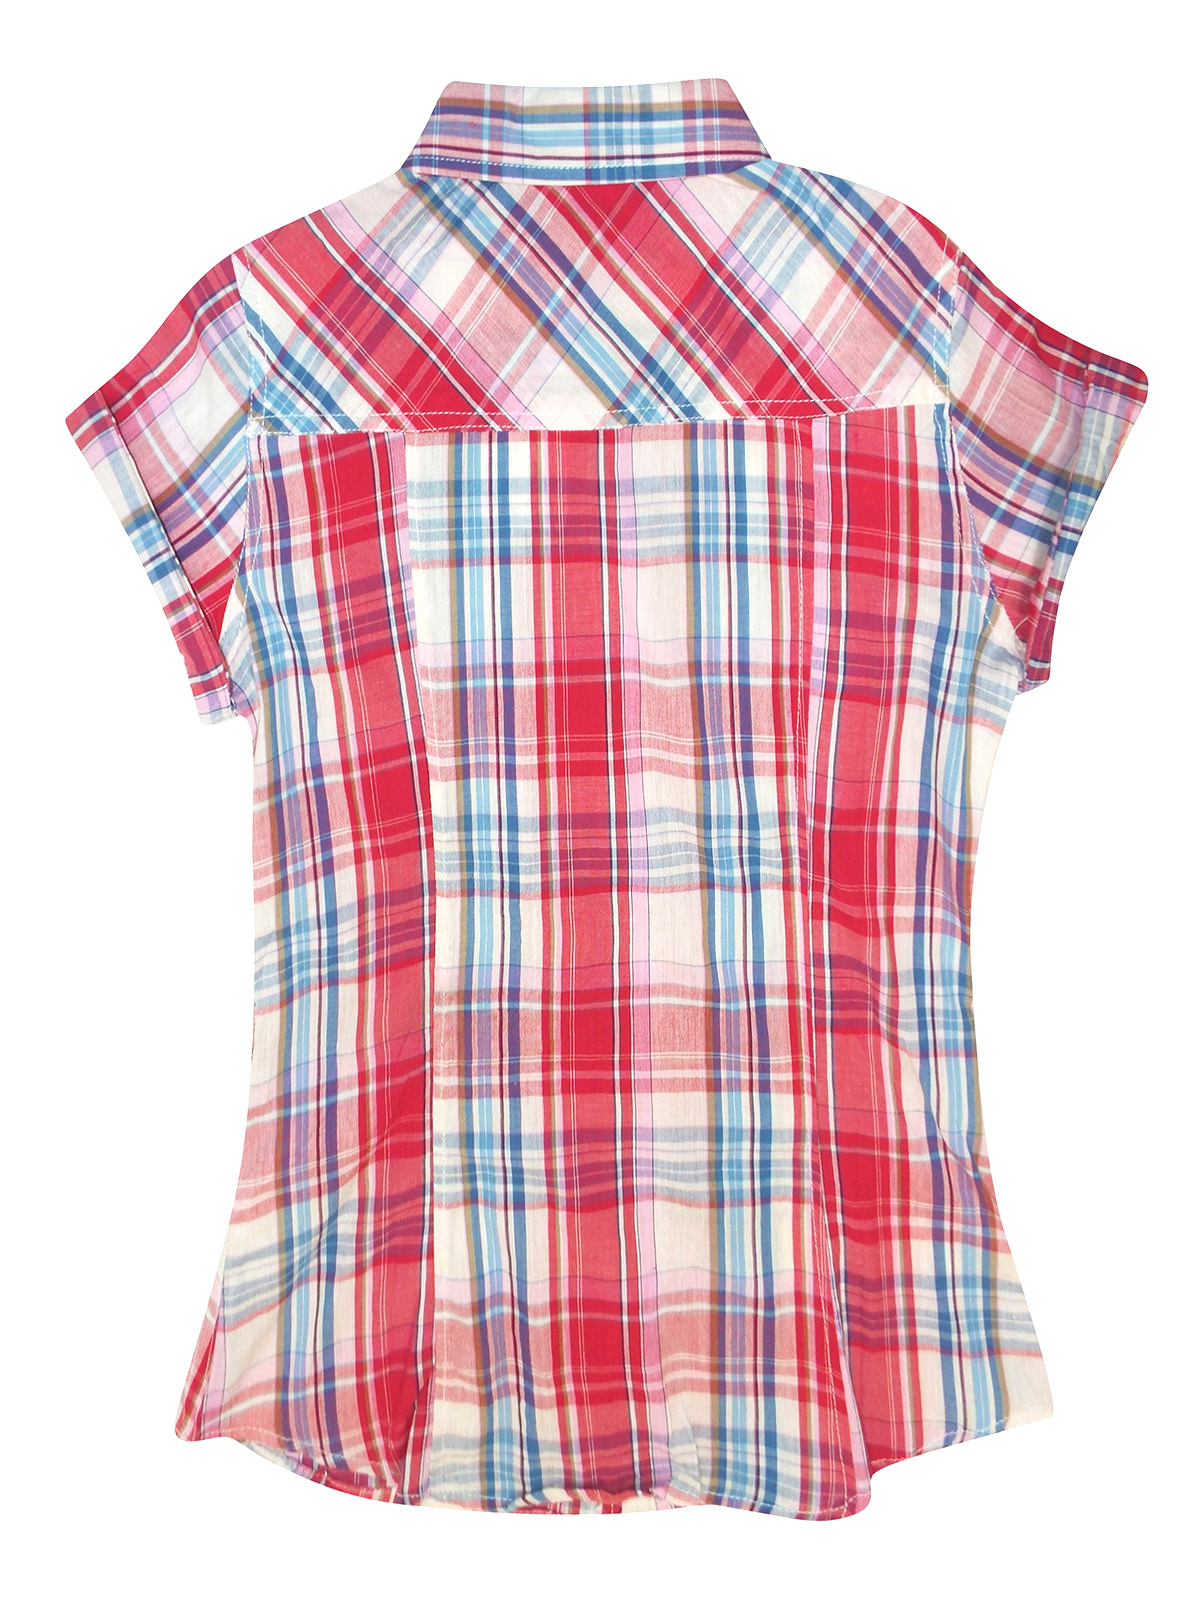 Ferranova - - Ferranova RED Camicia Pure Cotton Checked Blouse - Size 8 ...